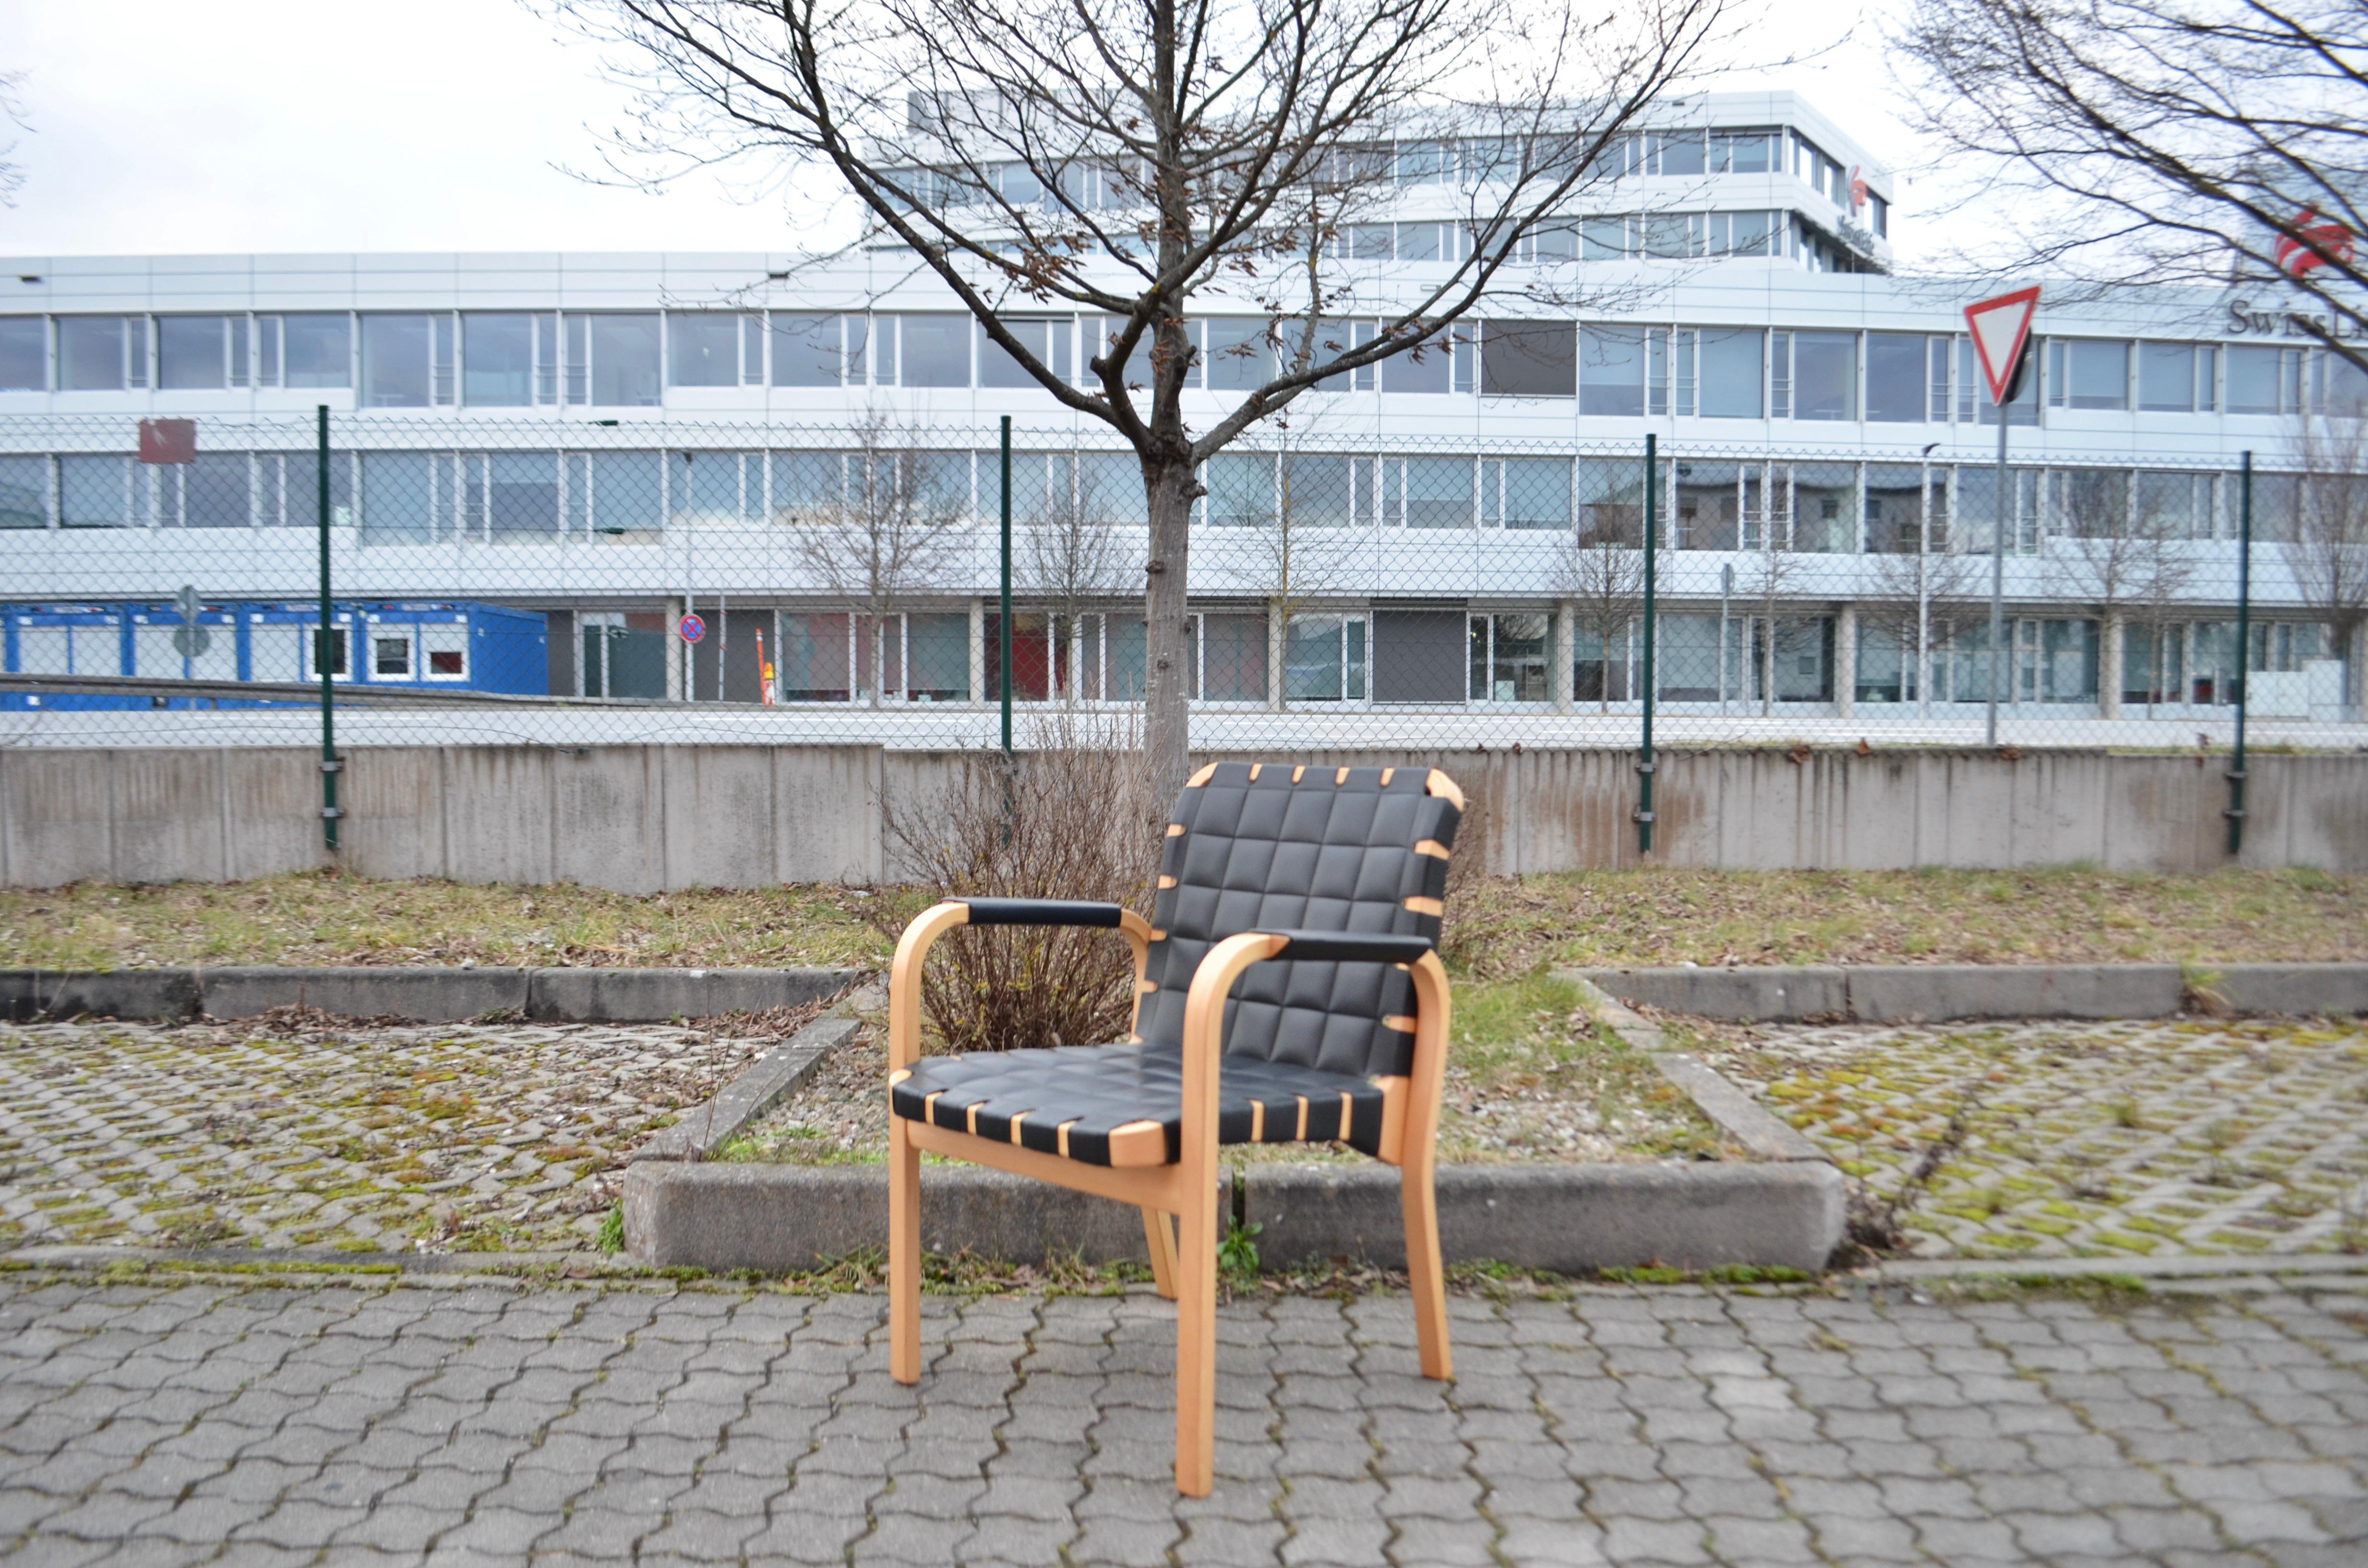 Seltener Sessel Modell 45 von Alvar Aalto, hergestellt aus laminiertem Birkenholz und schwarzem Anilinleder.
Hergestellt von Artek.
Die Stühle sind sehr bequem und leichtgewichtig.
Sie sind in bestem Zustand.
Er wurde nicht oft benutzt. Fast